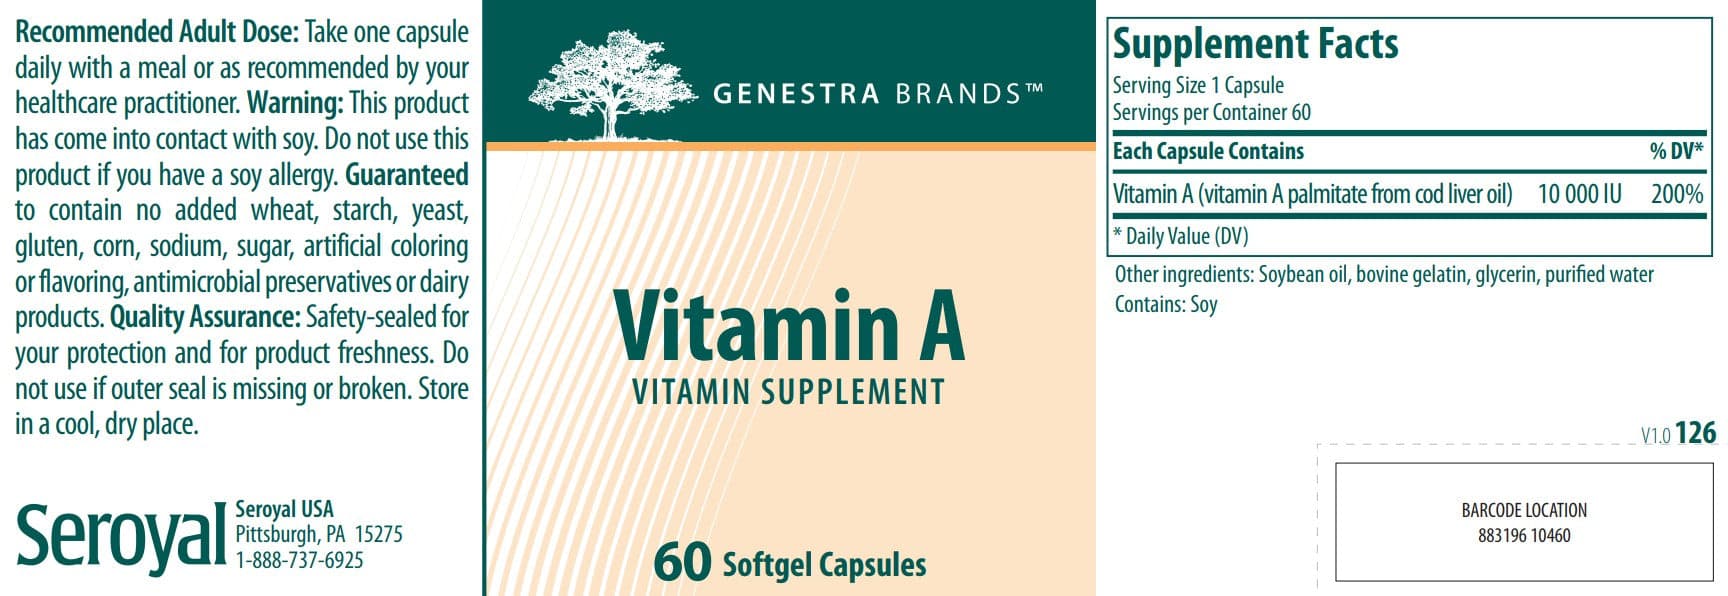 Genestra Brands Vitamin A